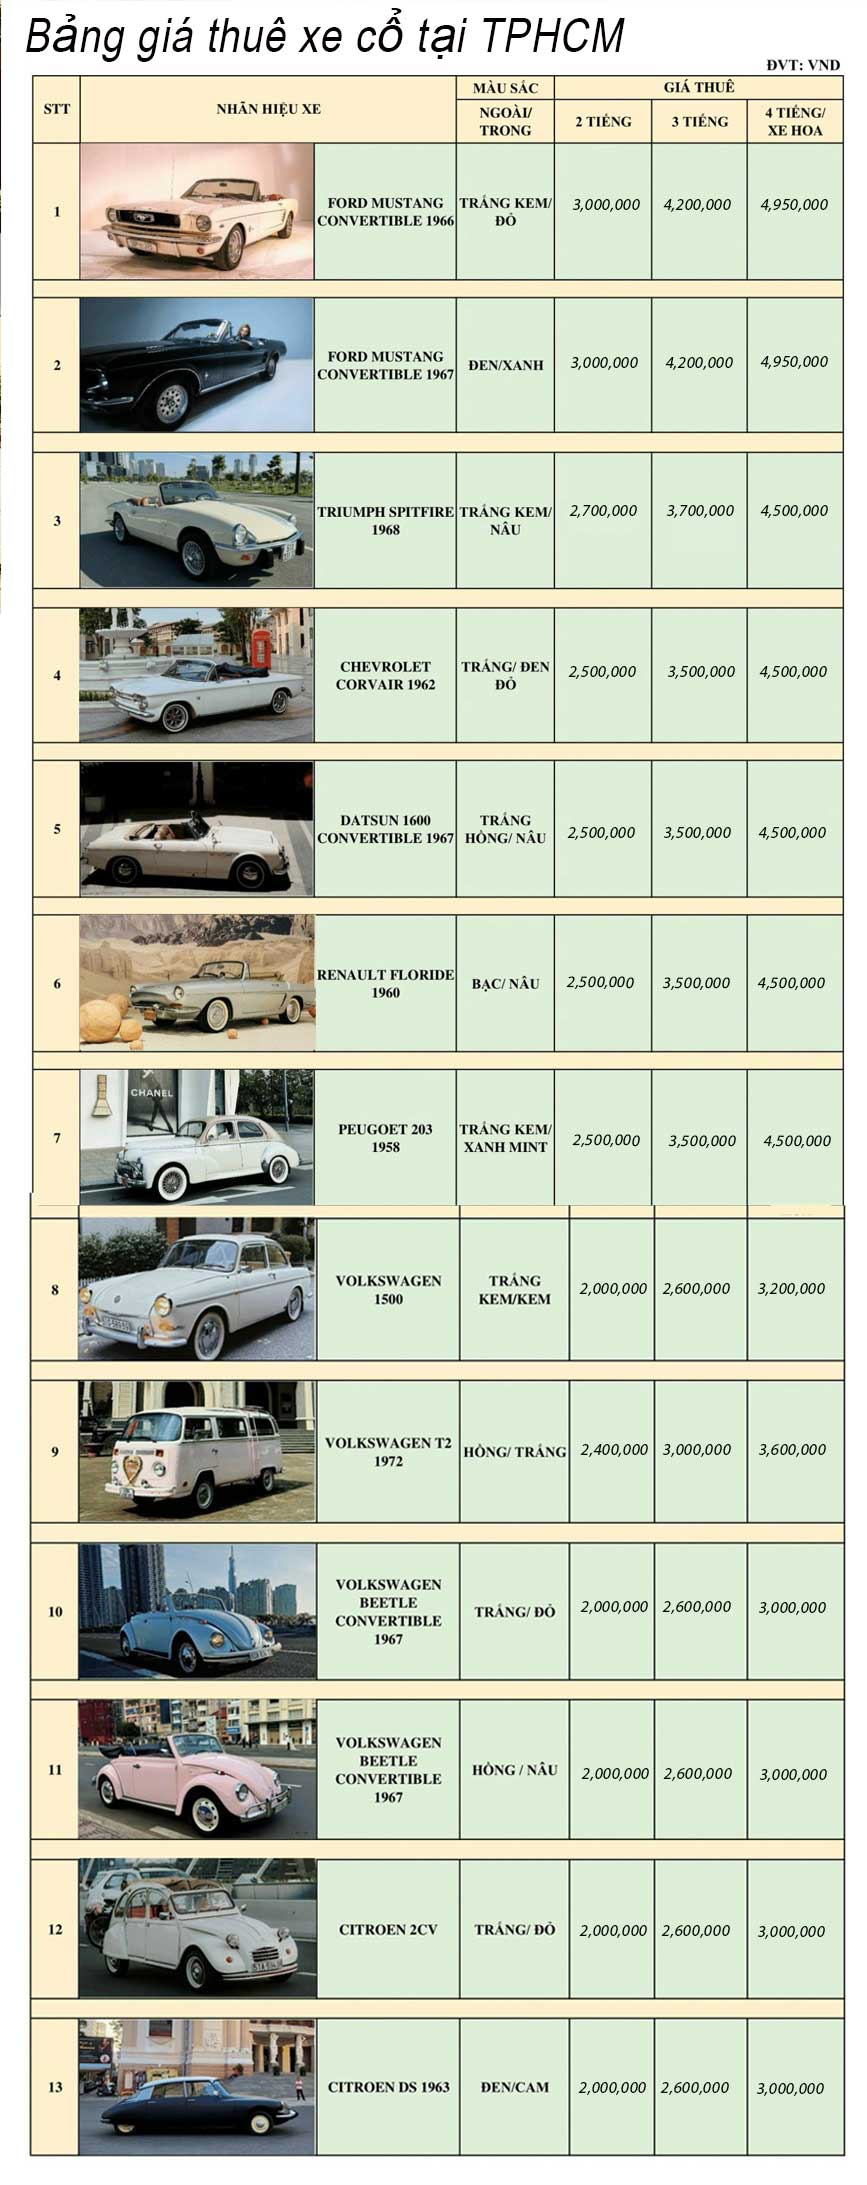 Bảng giá thuê xe cổ tại TPHCM